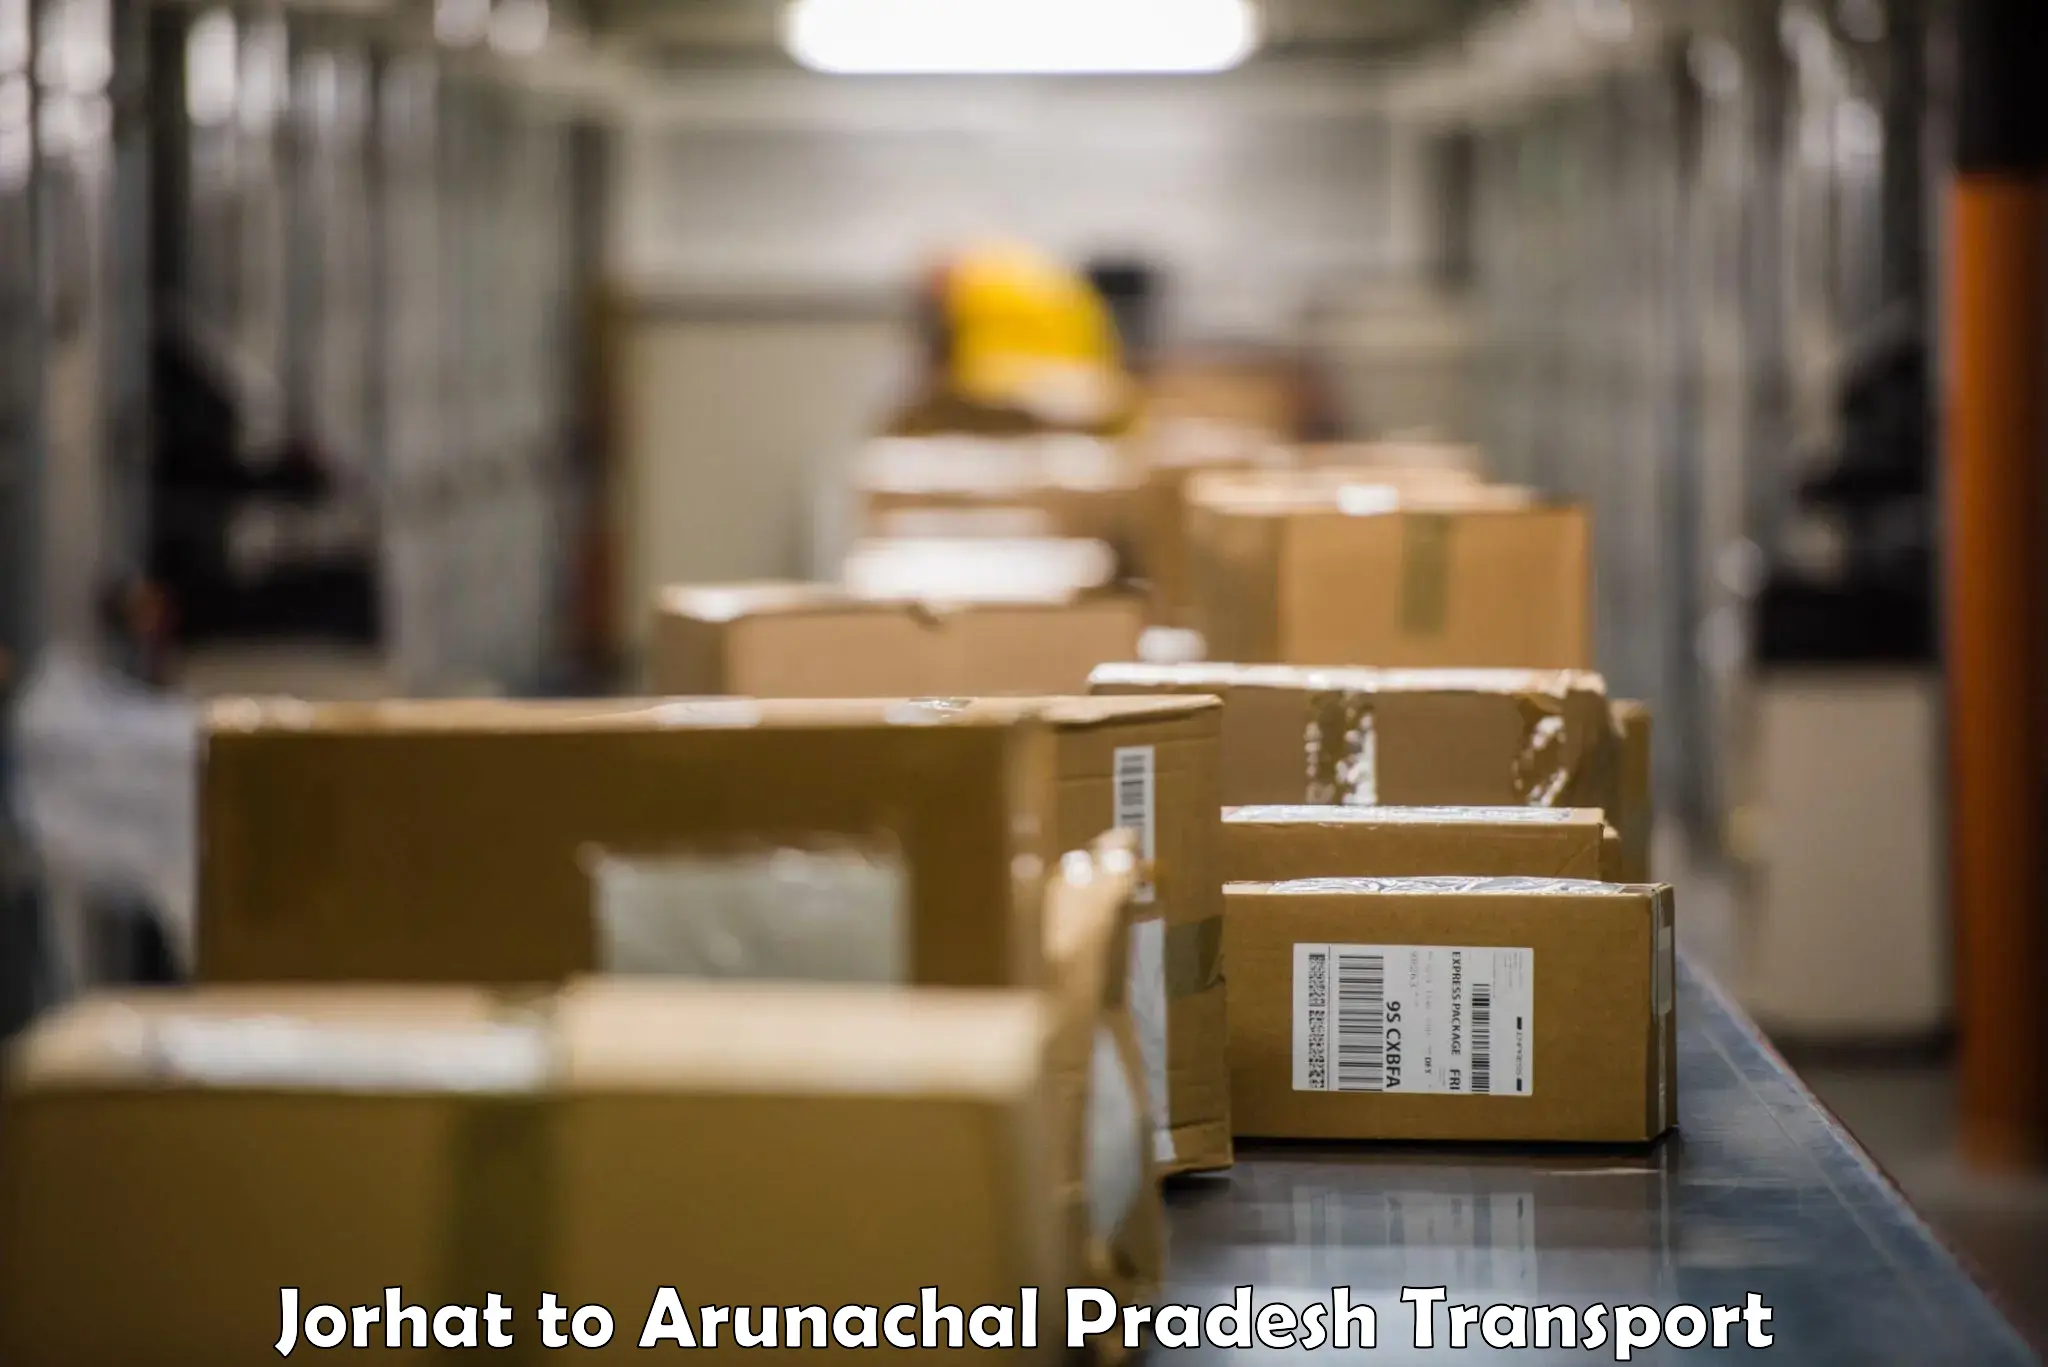 Road transport online services Jorhat to Arunachal Pradesh